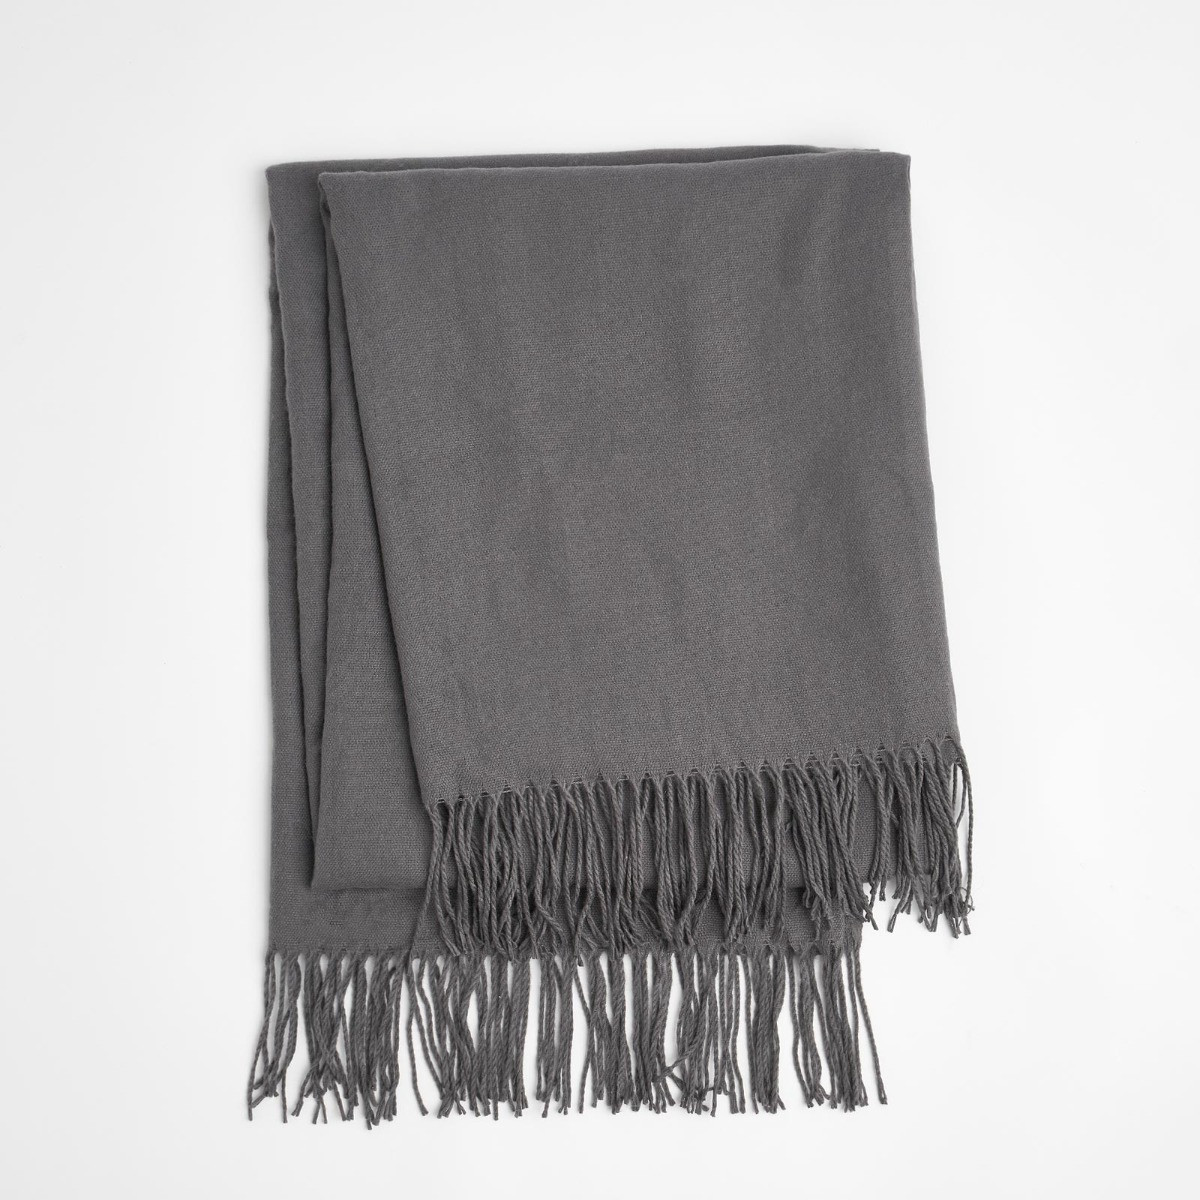 Highams Acrylic Plain Fleece Throw, Charcoal - 150 x 200cm>